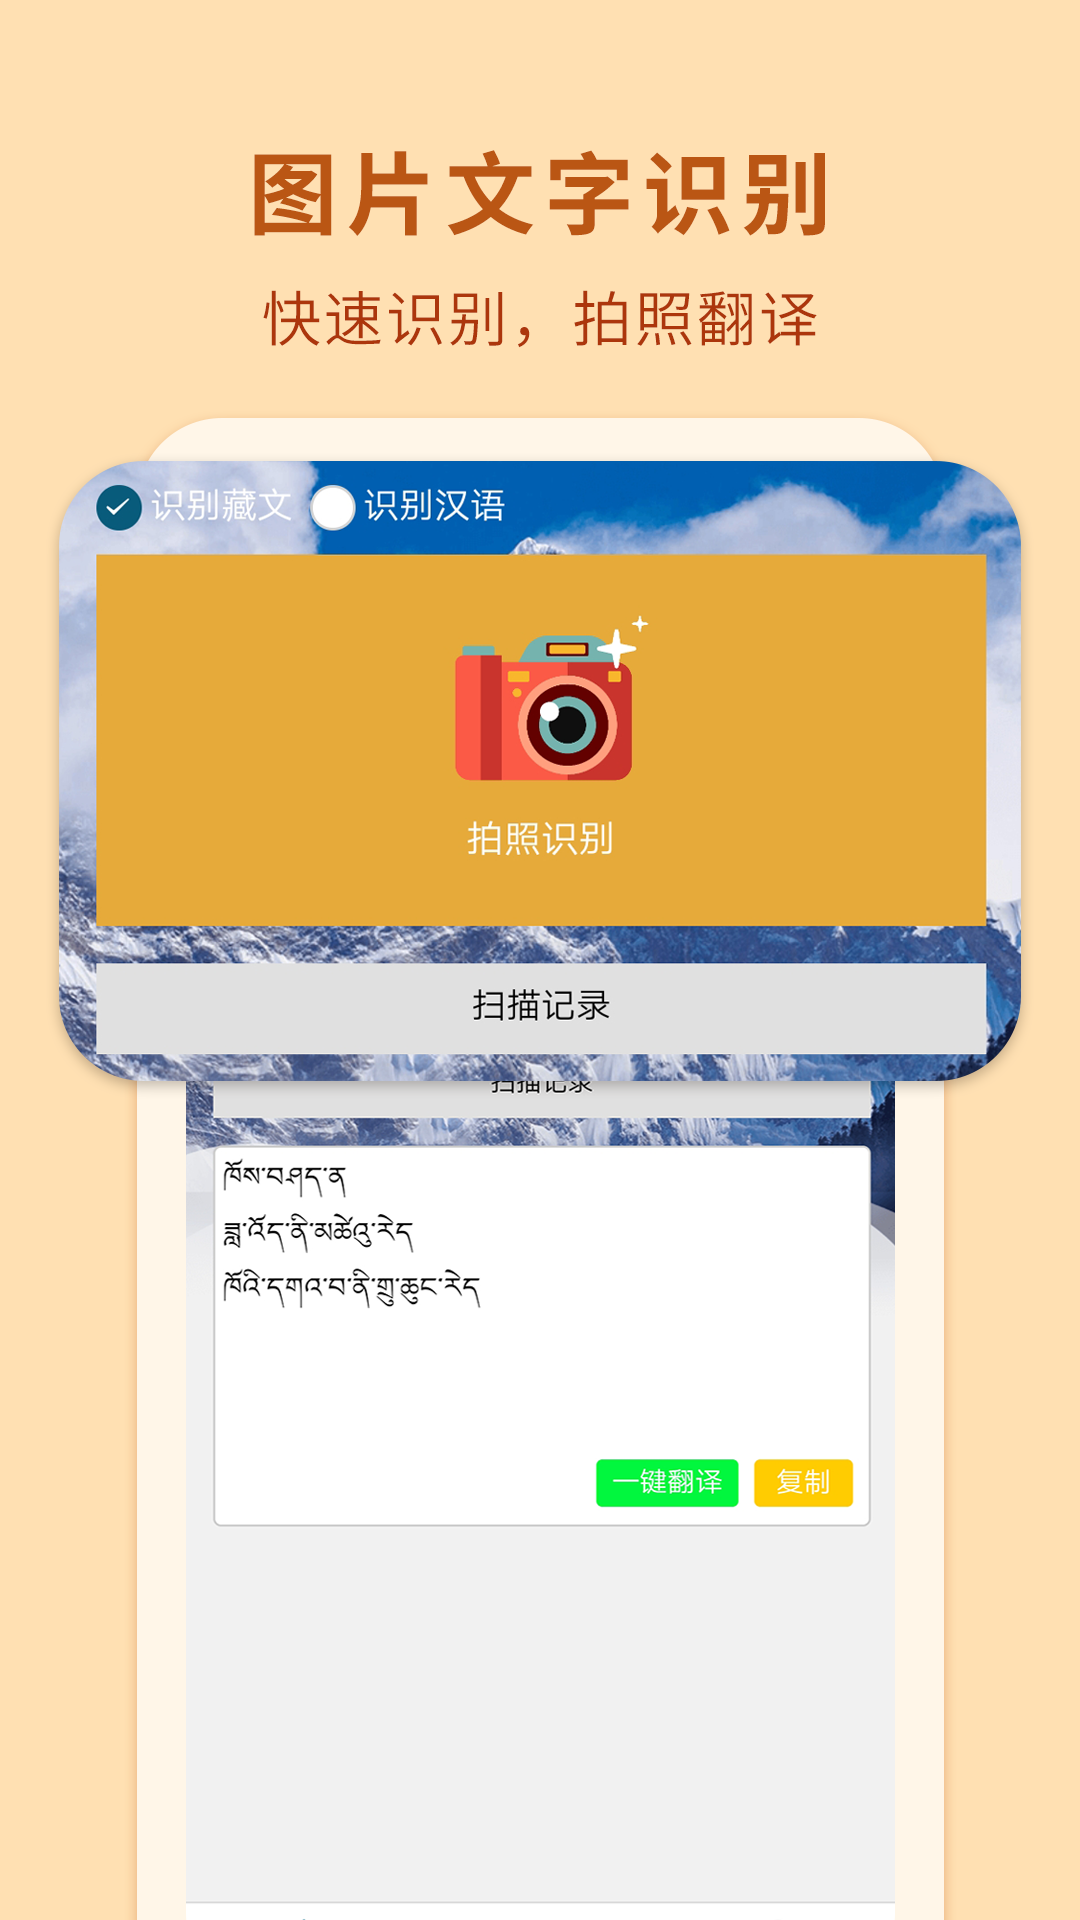 让语言不再隔阂，藏汉智能翻译安卓系统助您开启多元文化之旅  第2张